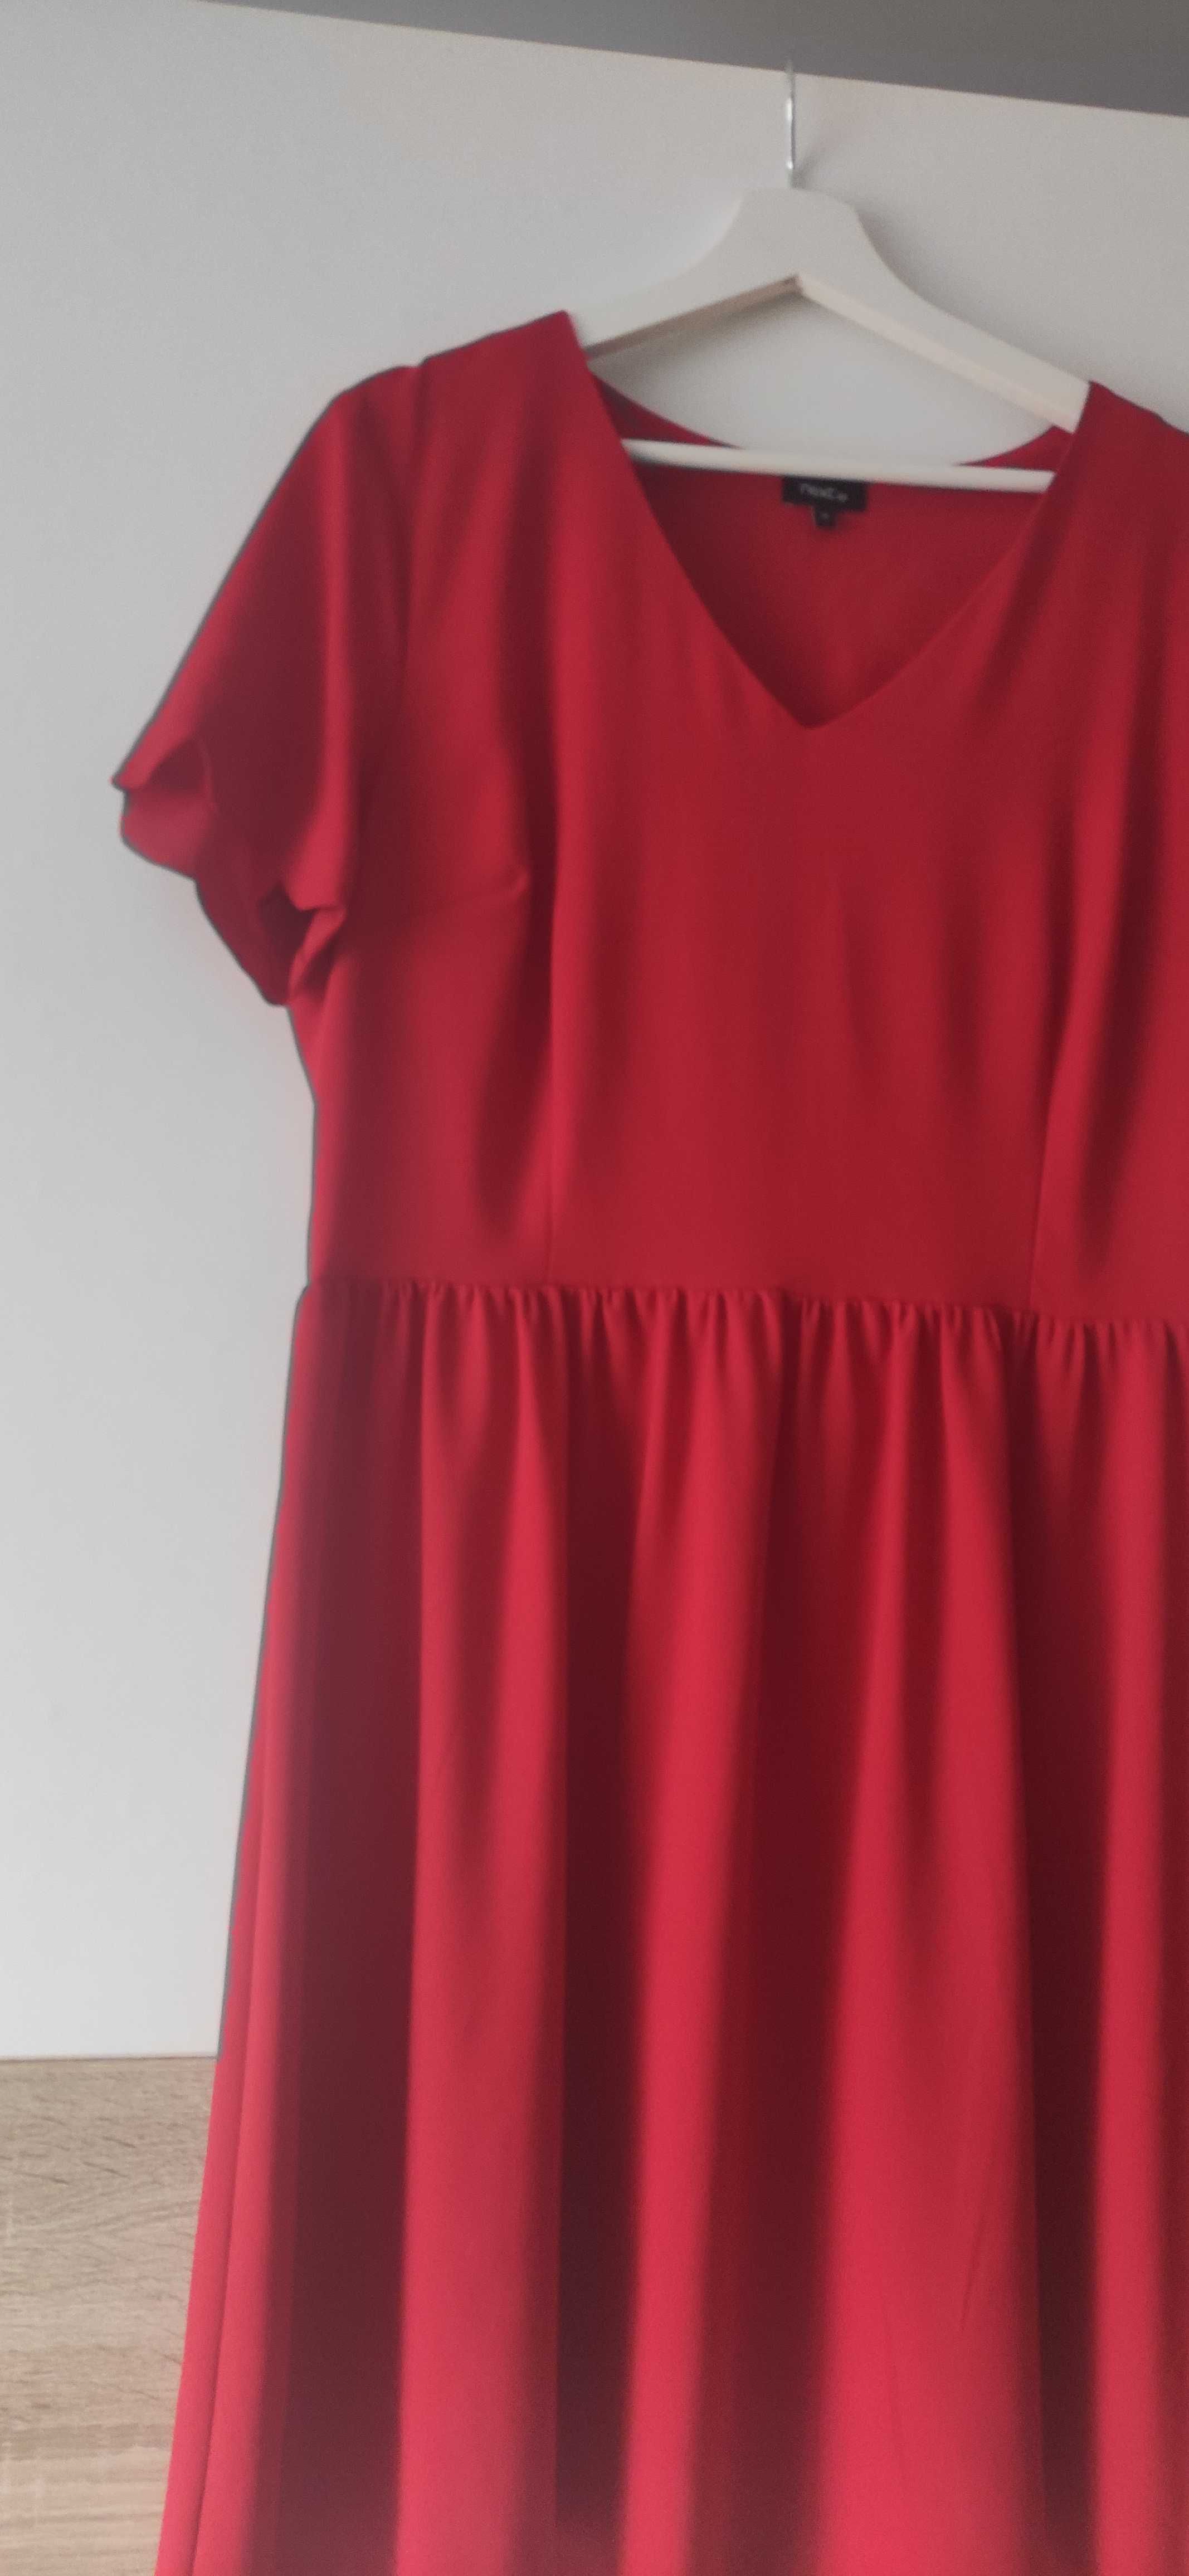 Elegancka czerwona sukienka rozmiar 18 3XL